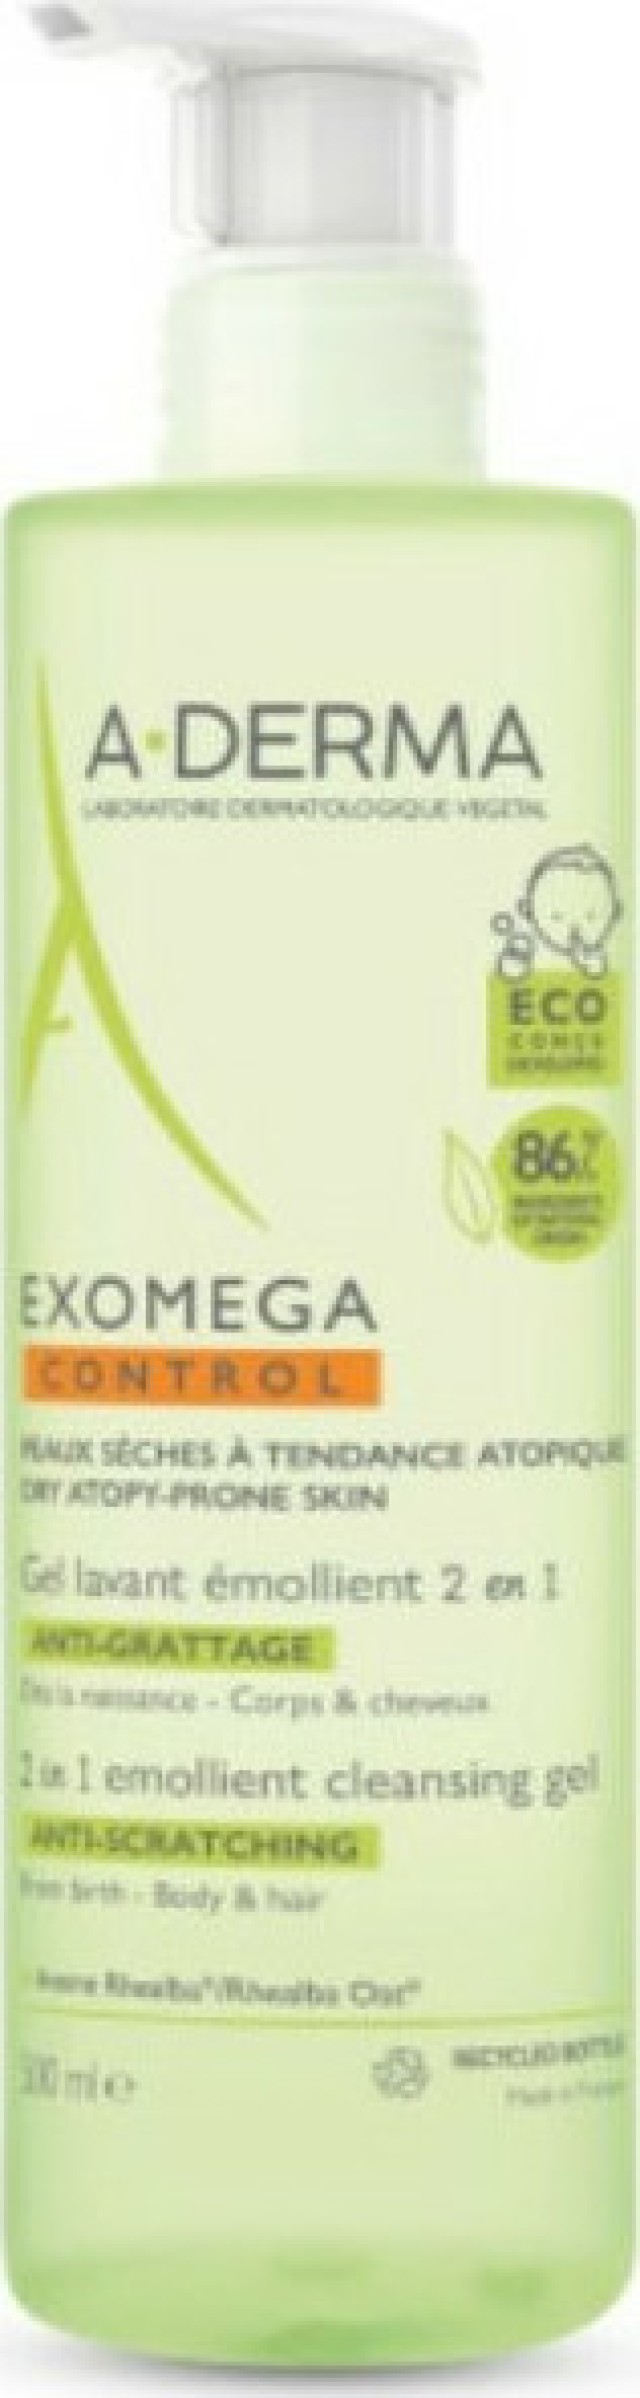 A Derma Exomega Control Emollient Cleansing Gel 2 in 1 Σαμπουάν - Αφρόλουτρο για Βρέφη & Παιδιά με Ατοπικό Δέρμα 2 in 1 500ml με Αντλία